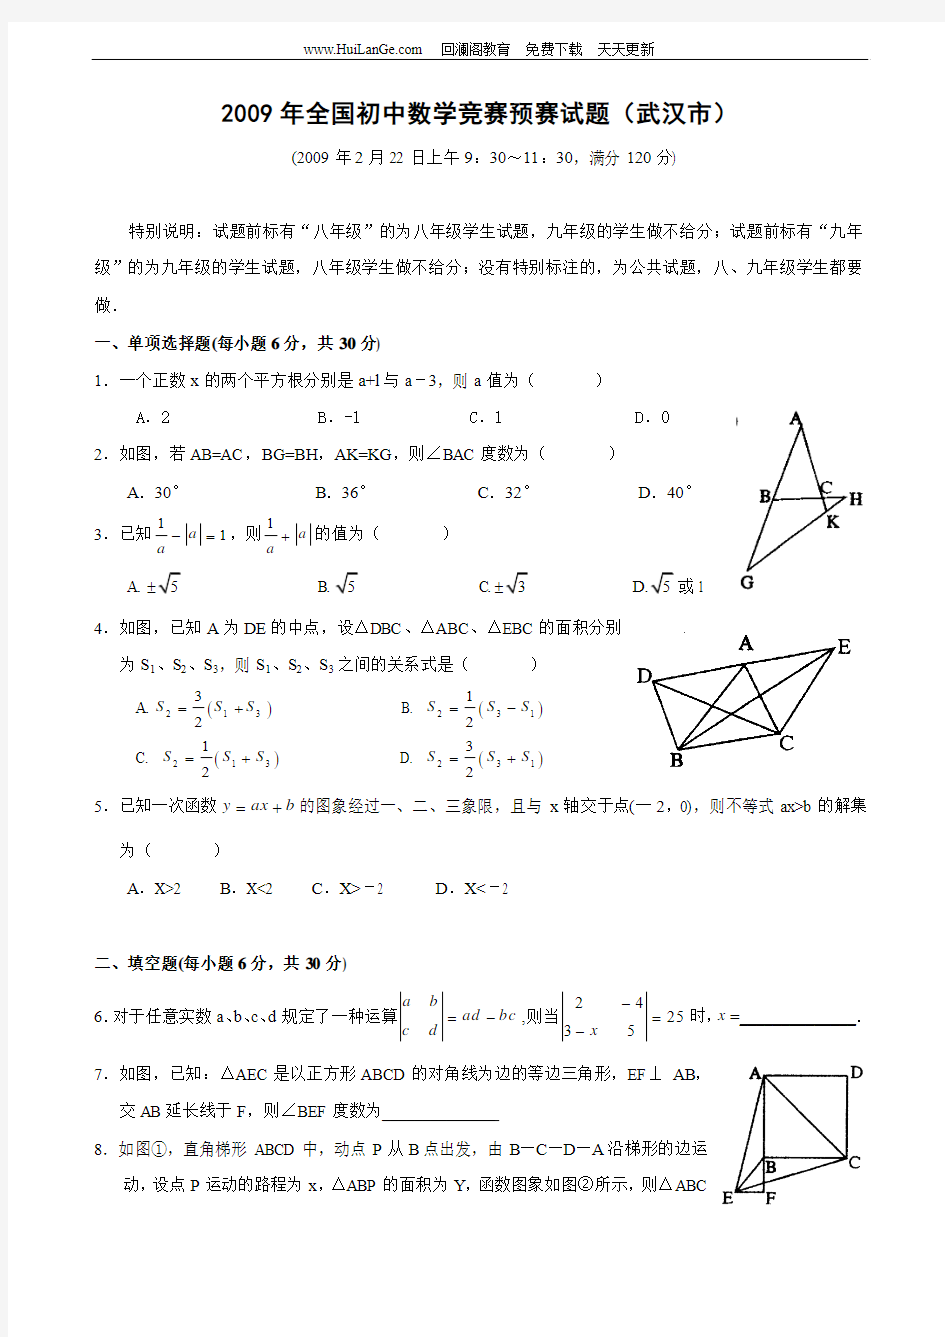 武汉市2009年全国初中数学奥林匹克竞赛预赛试题附答案